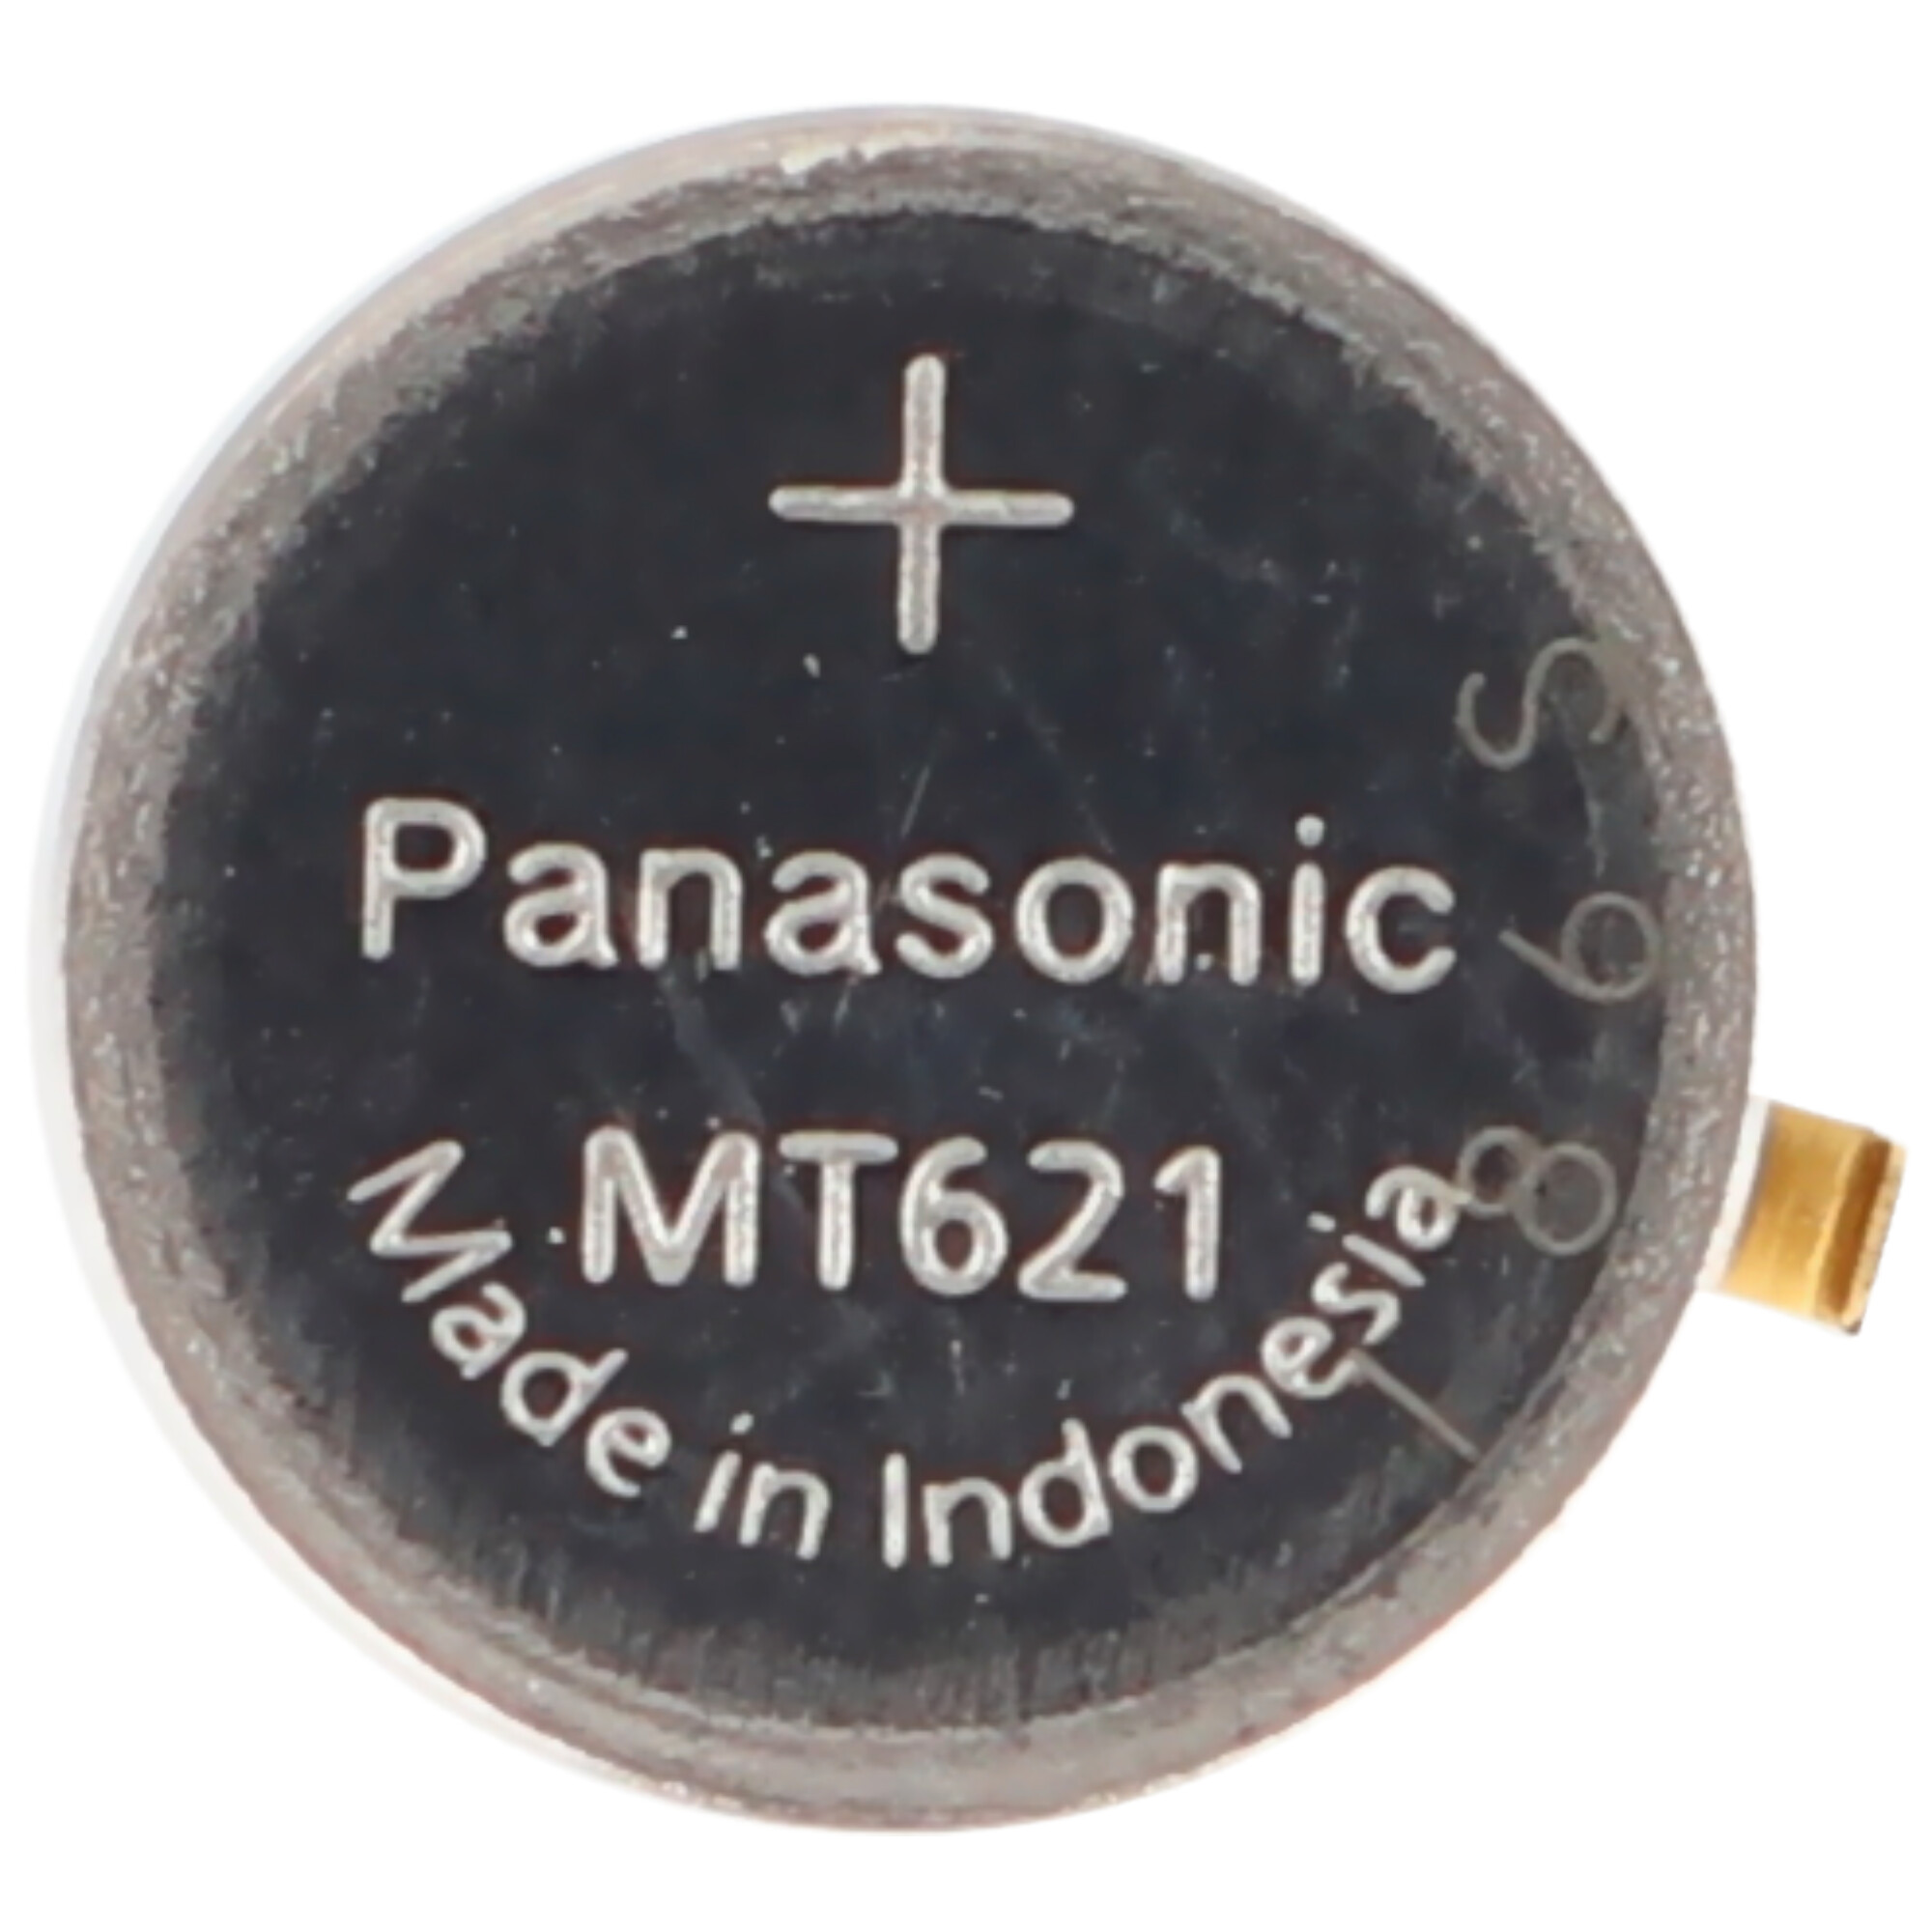 Panasonic Batterie passend für Citizen Kaliber E000, MT621, Kondensator 295-51, 295-5100, E168, E410G, 1,5V, mit Fähnchen